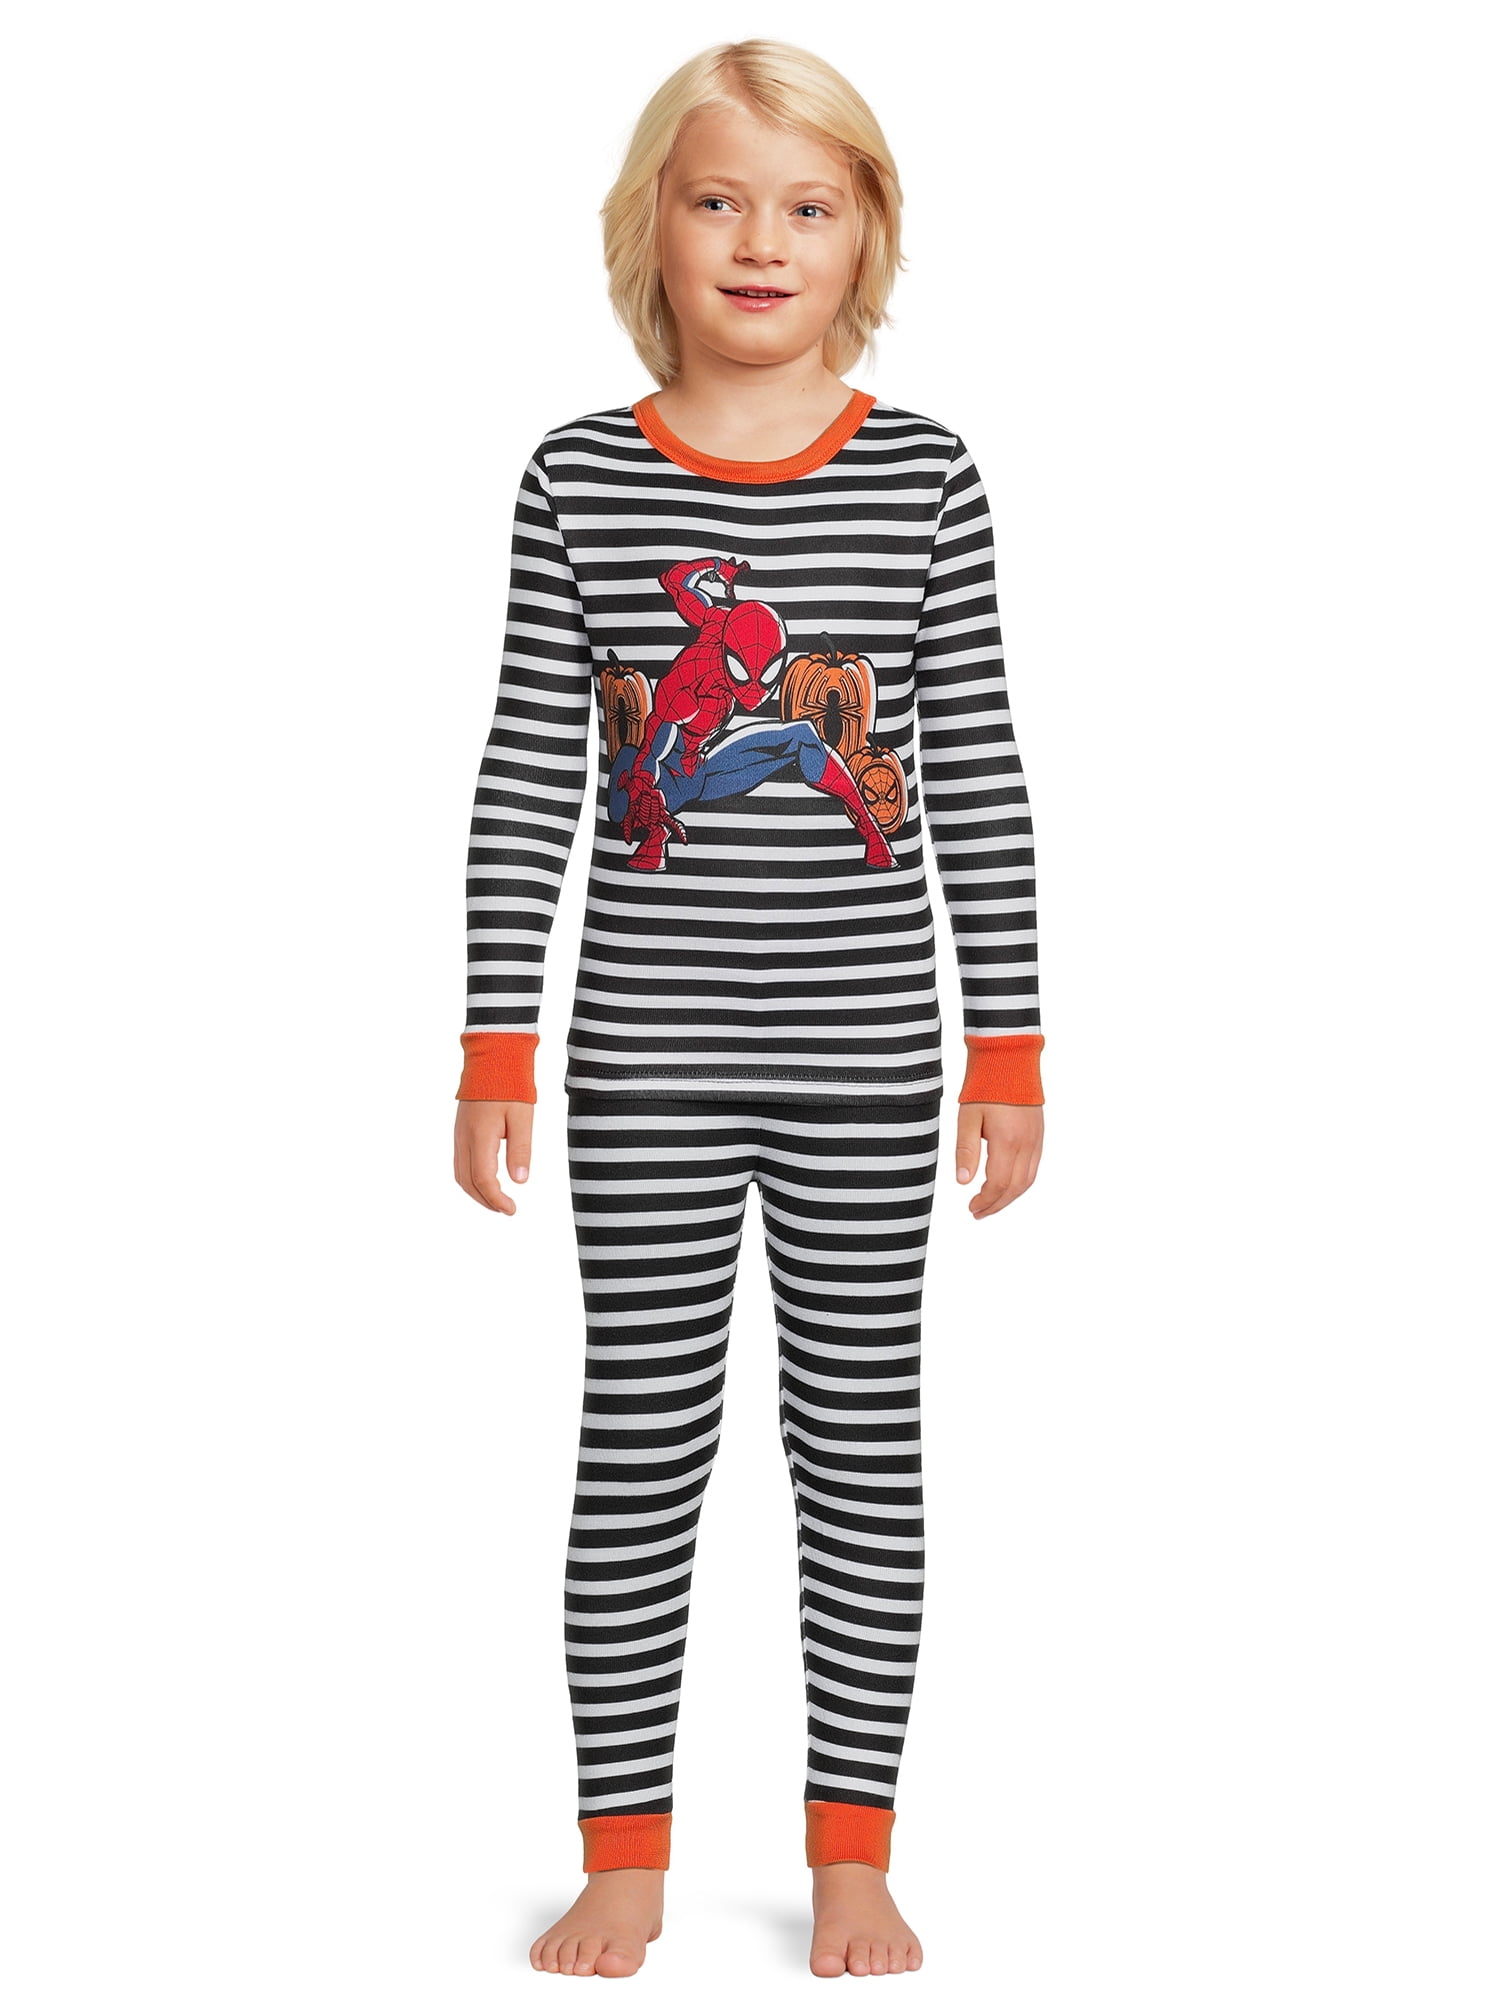 Spiderman 2 piece set Pajamas Sleepwear New Size Child 10 -12